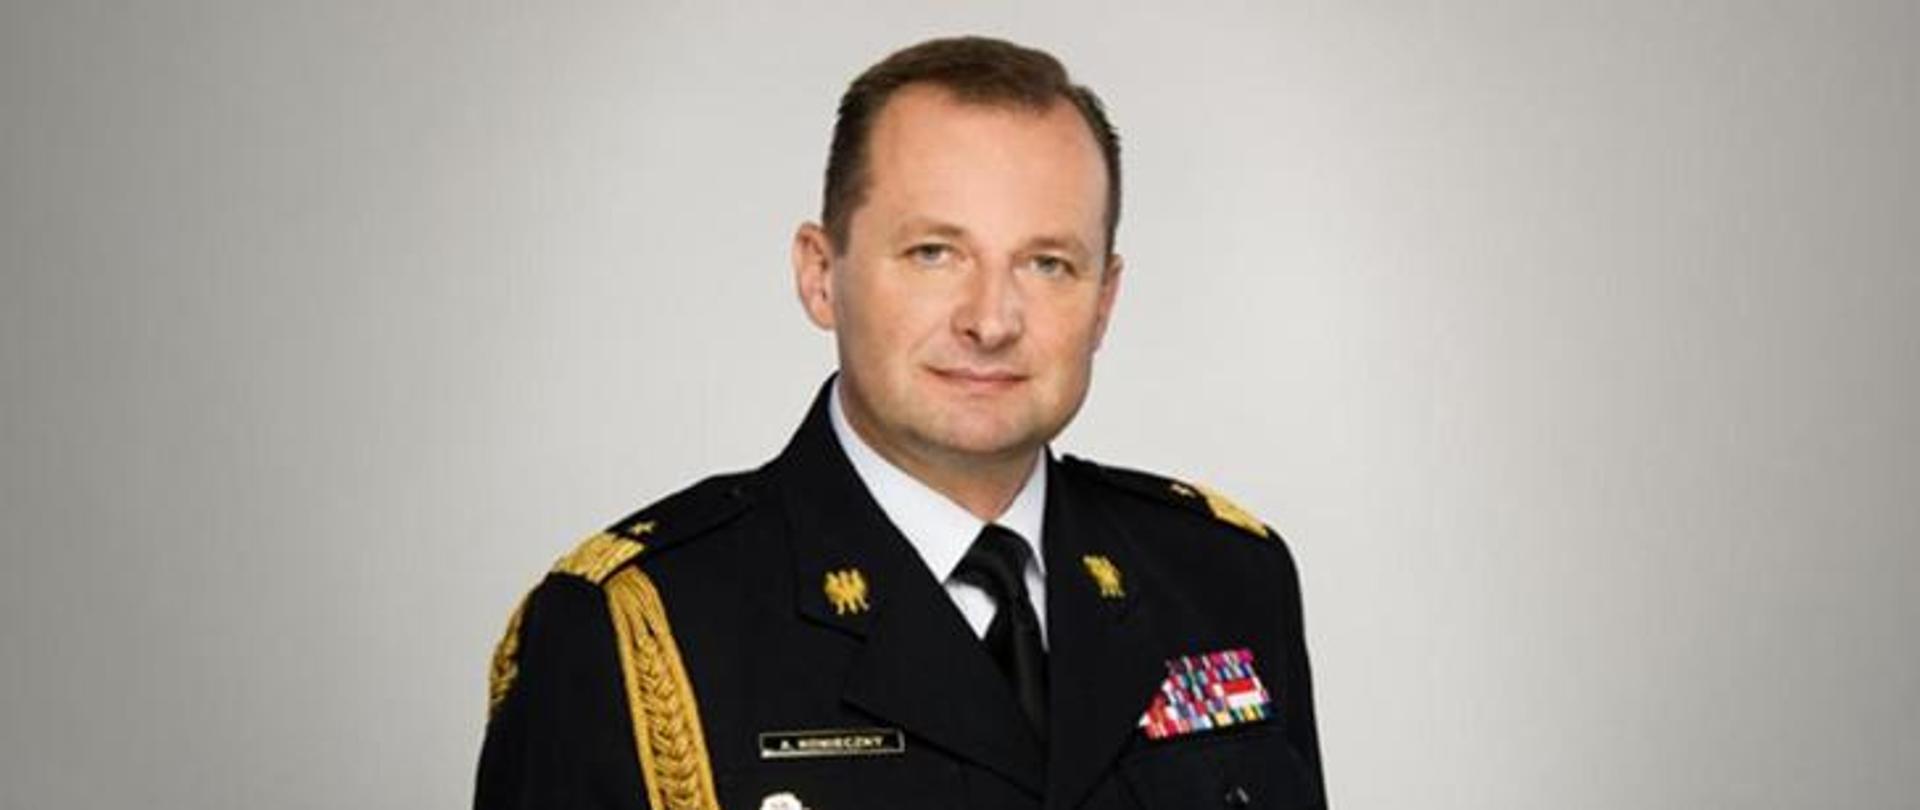 Zdjęcie portretowe Zastępcy Komendanta Głównego nadbryg. Adama Koniecznego w mundurze wyjściowym.